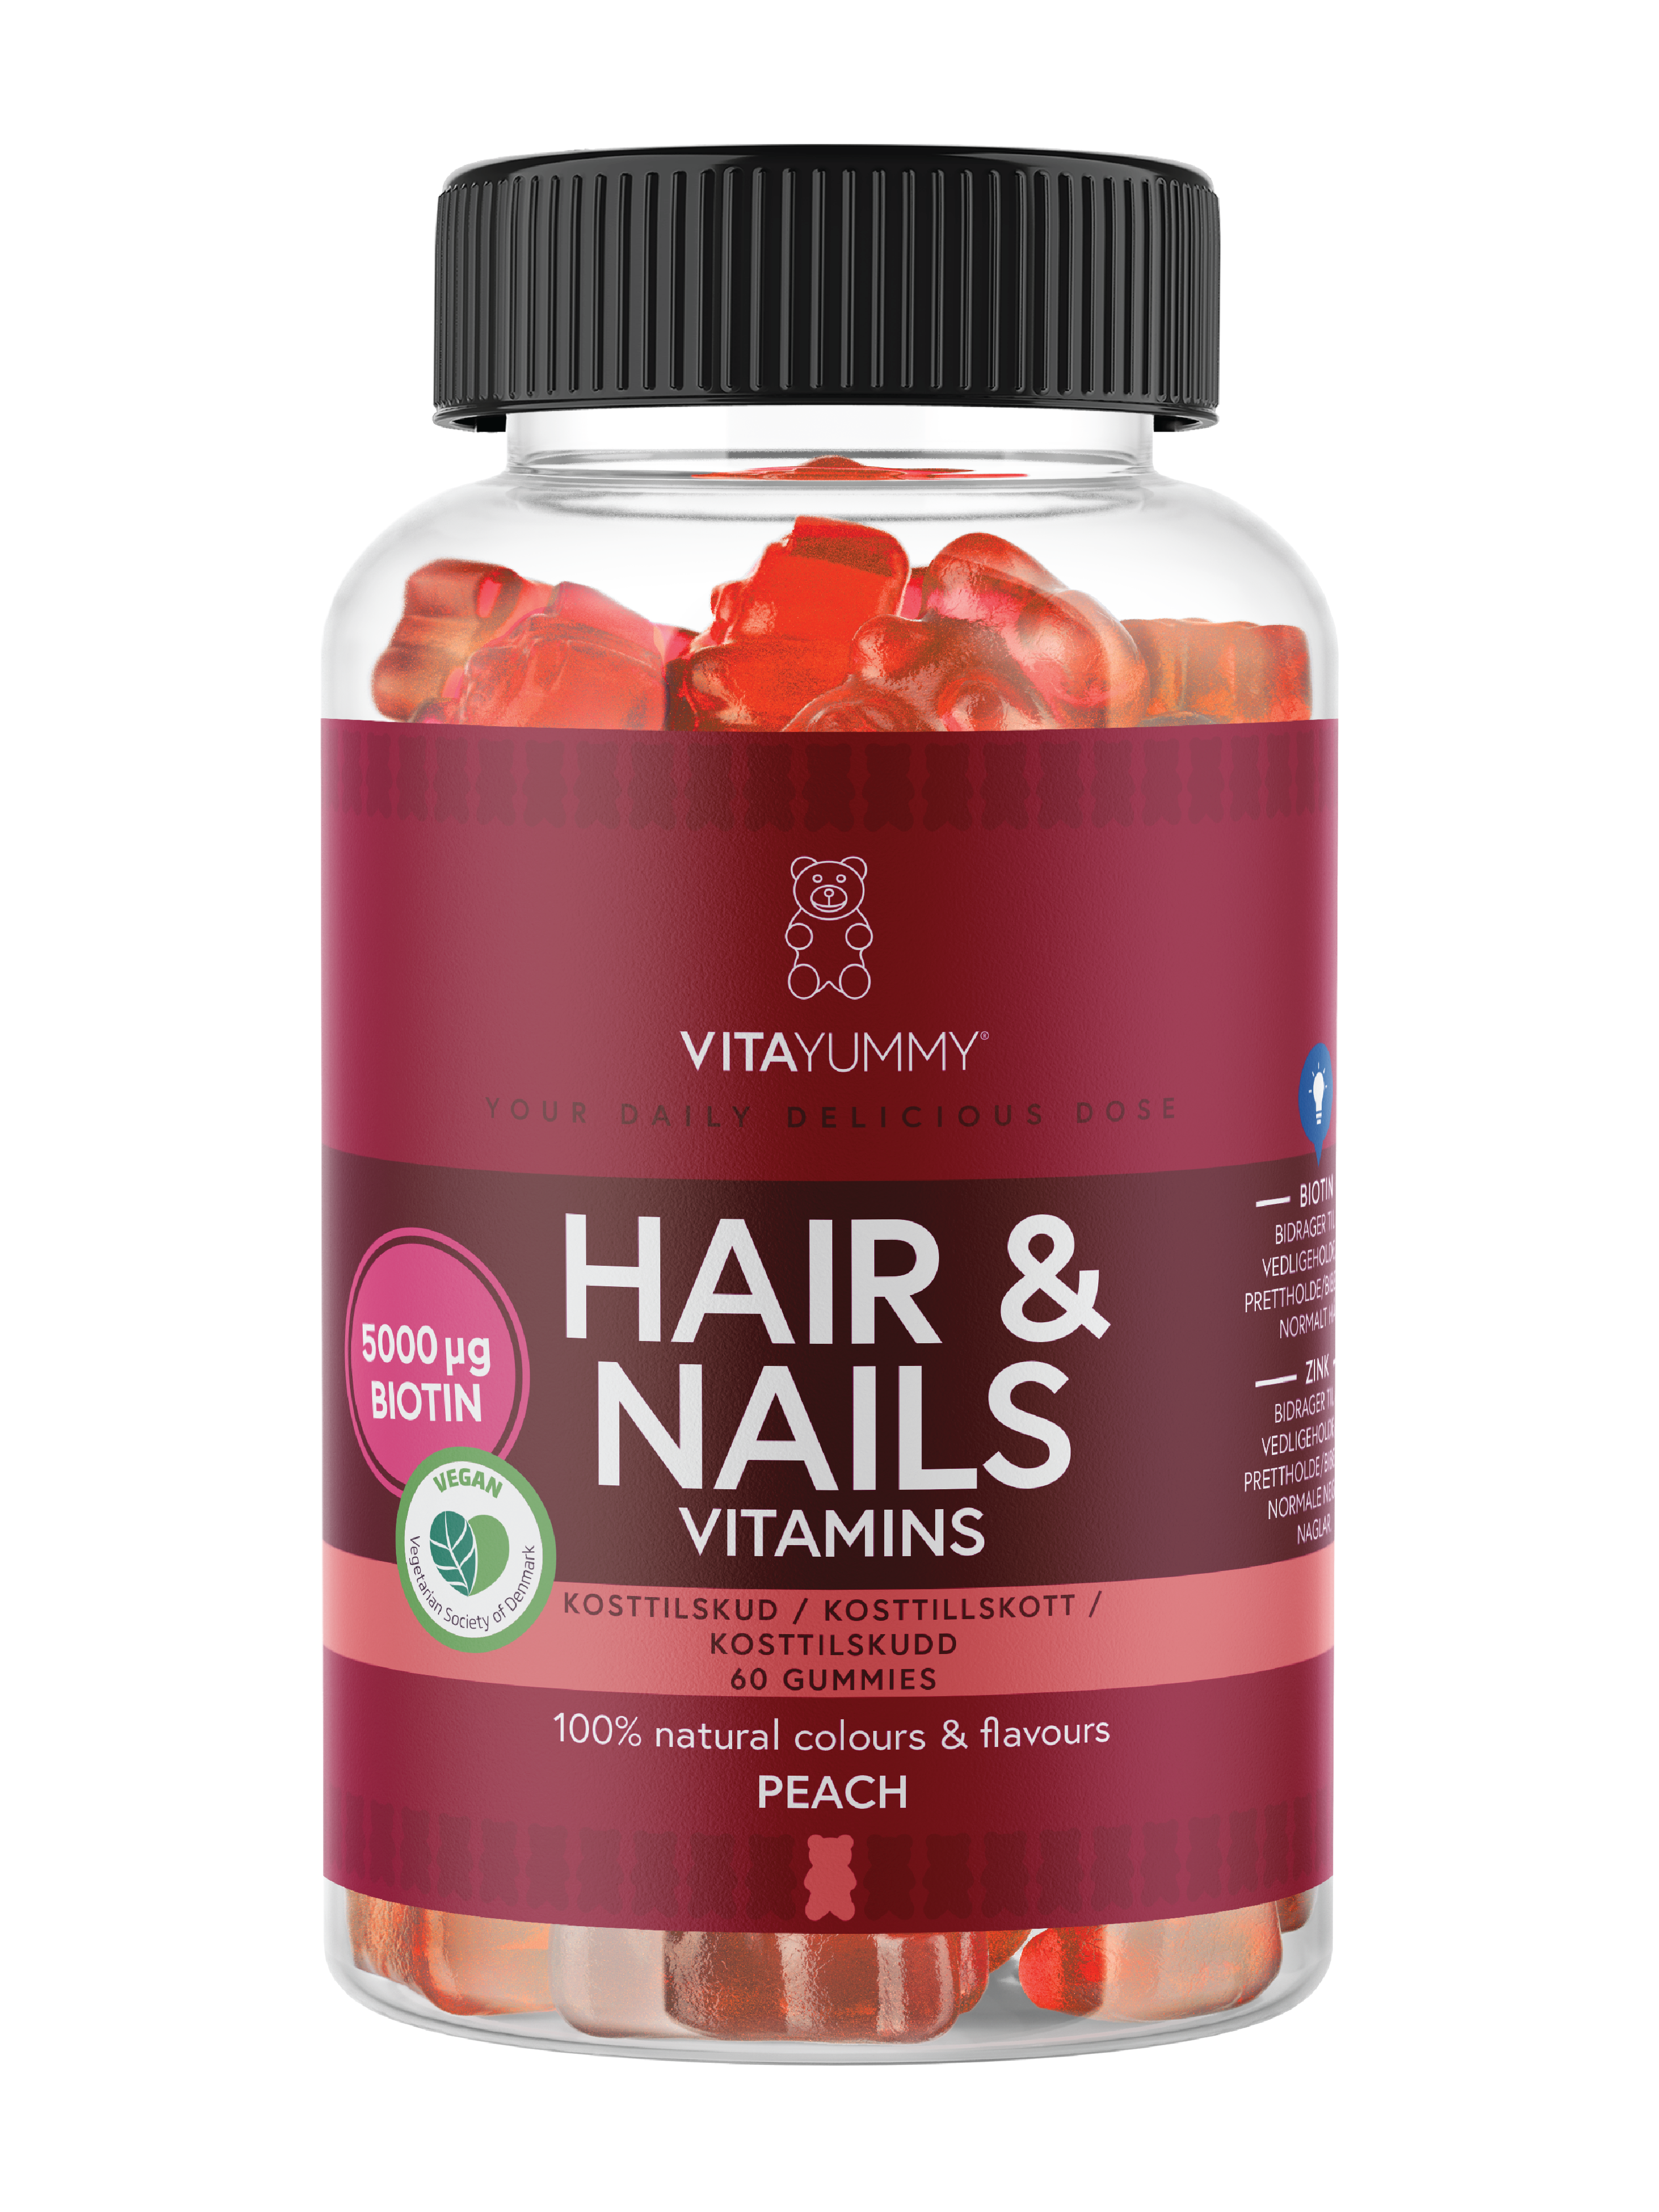 VitaYummy Hair & Nails Vitamins, Fersken, 60 stk.